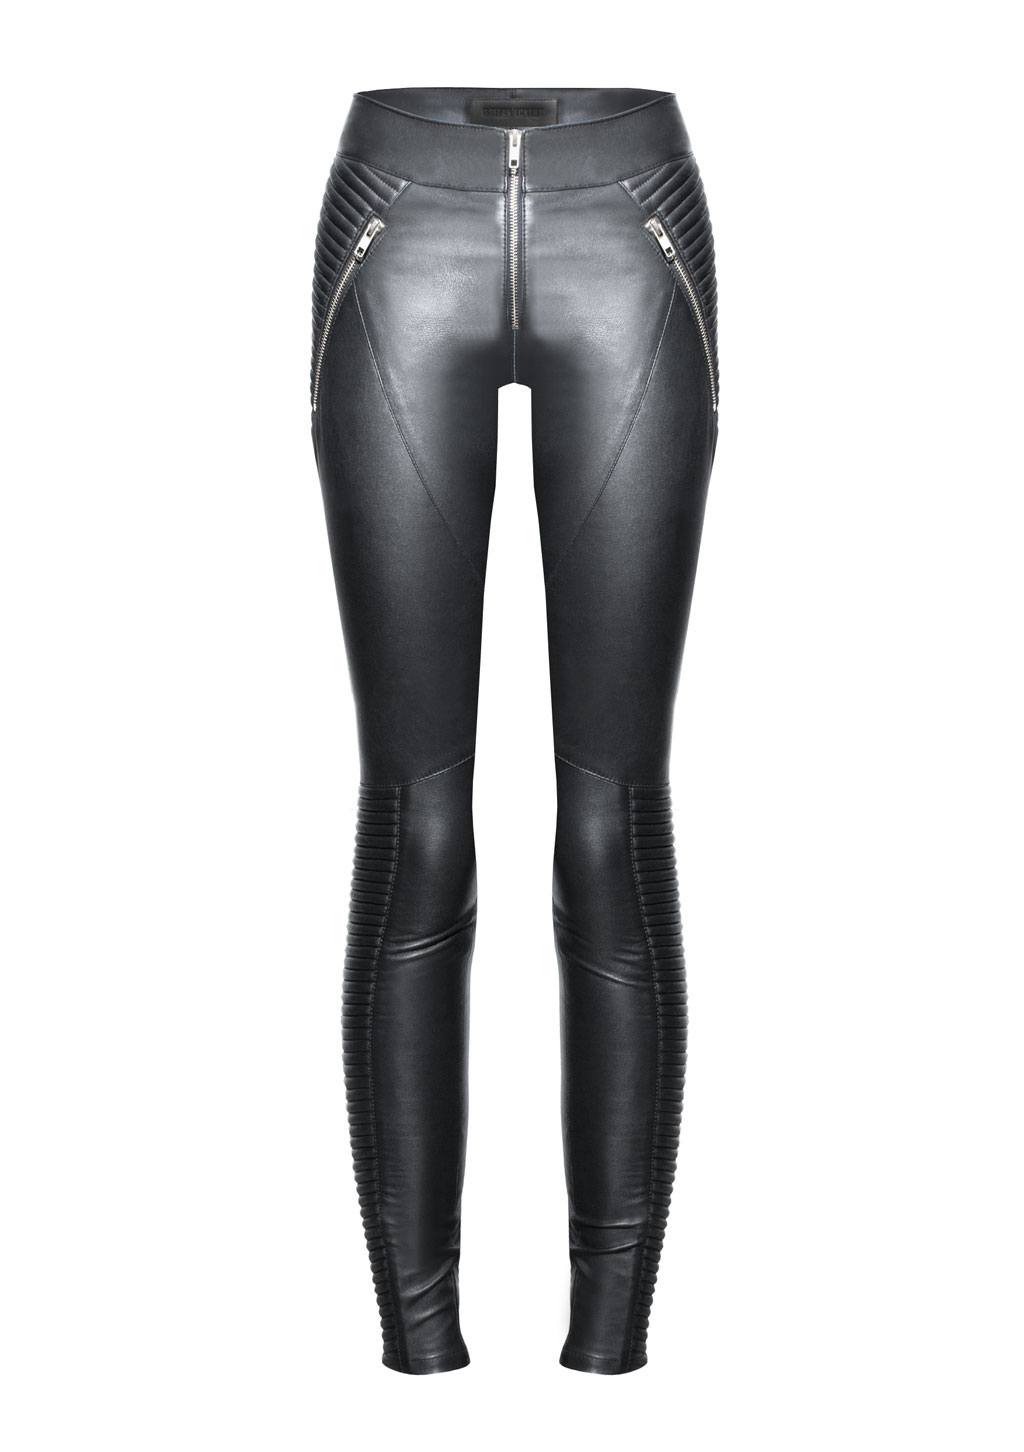 Designer Lederhosen von Stefan Eckert, hergestellt aus exklusivem Lamm-Stretchleder, Farbe schwarz, mit Biker-Steppungen.